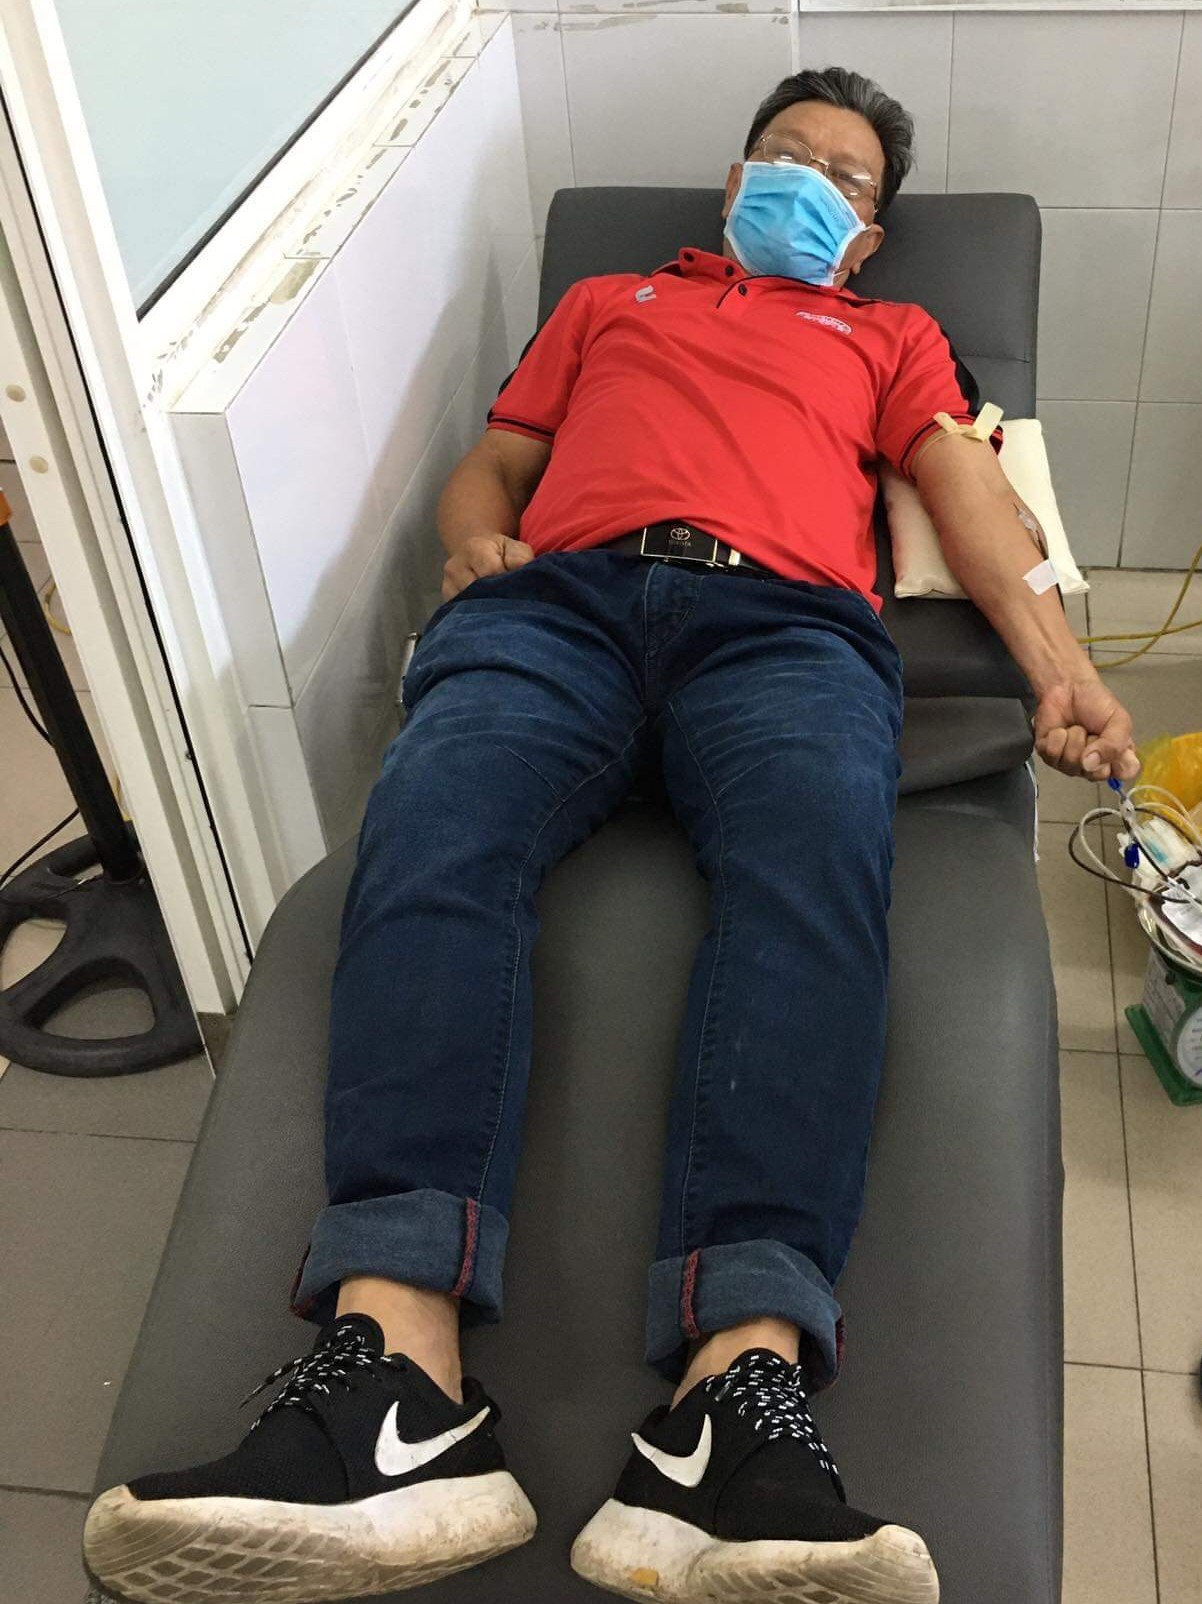 CLB máu sống ở Đà Nẵng: Hãy cho đi khi còn có thể-7